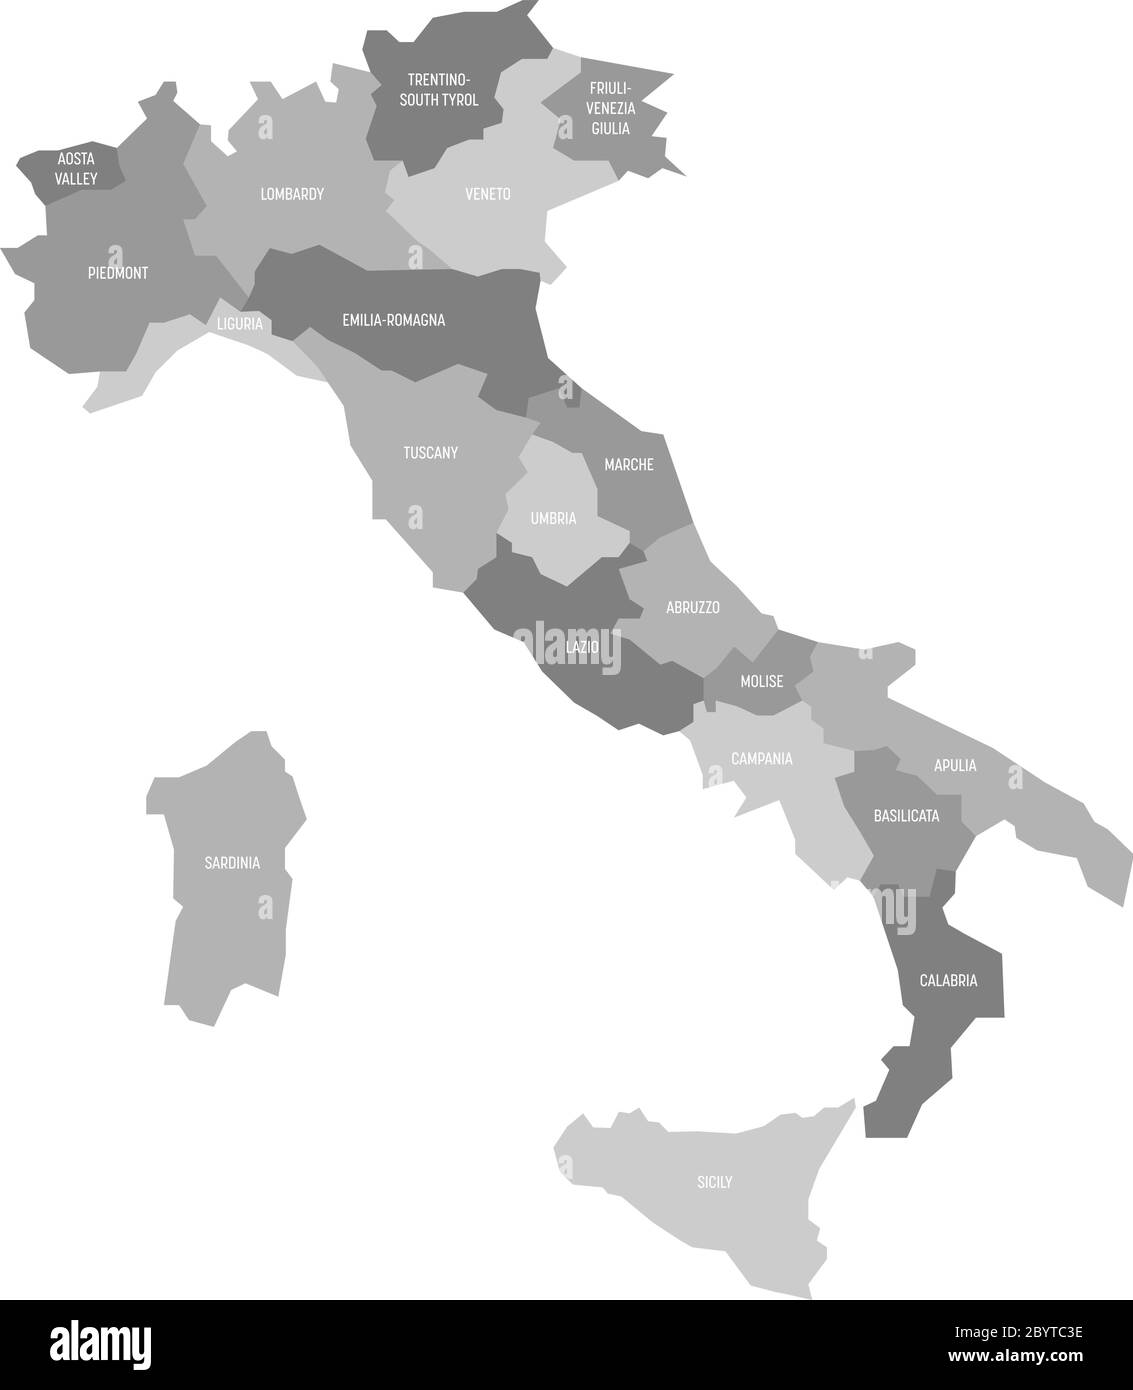 Mappa dell'Italia divisa in 20 regioni amministrative in quattro tonalità di grigio. Etichette bianche. Semplice illustrazione vettoriale piatta. Illustrazione Vettoriale